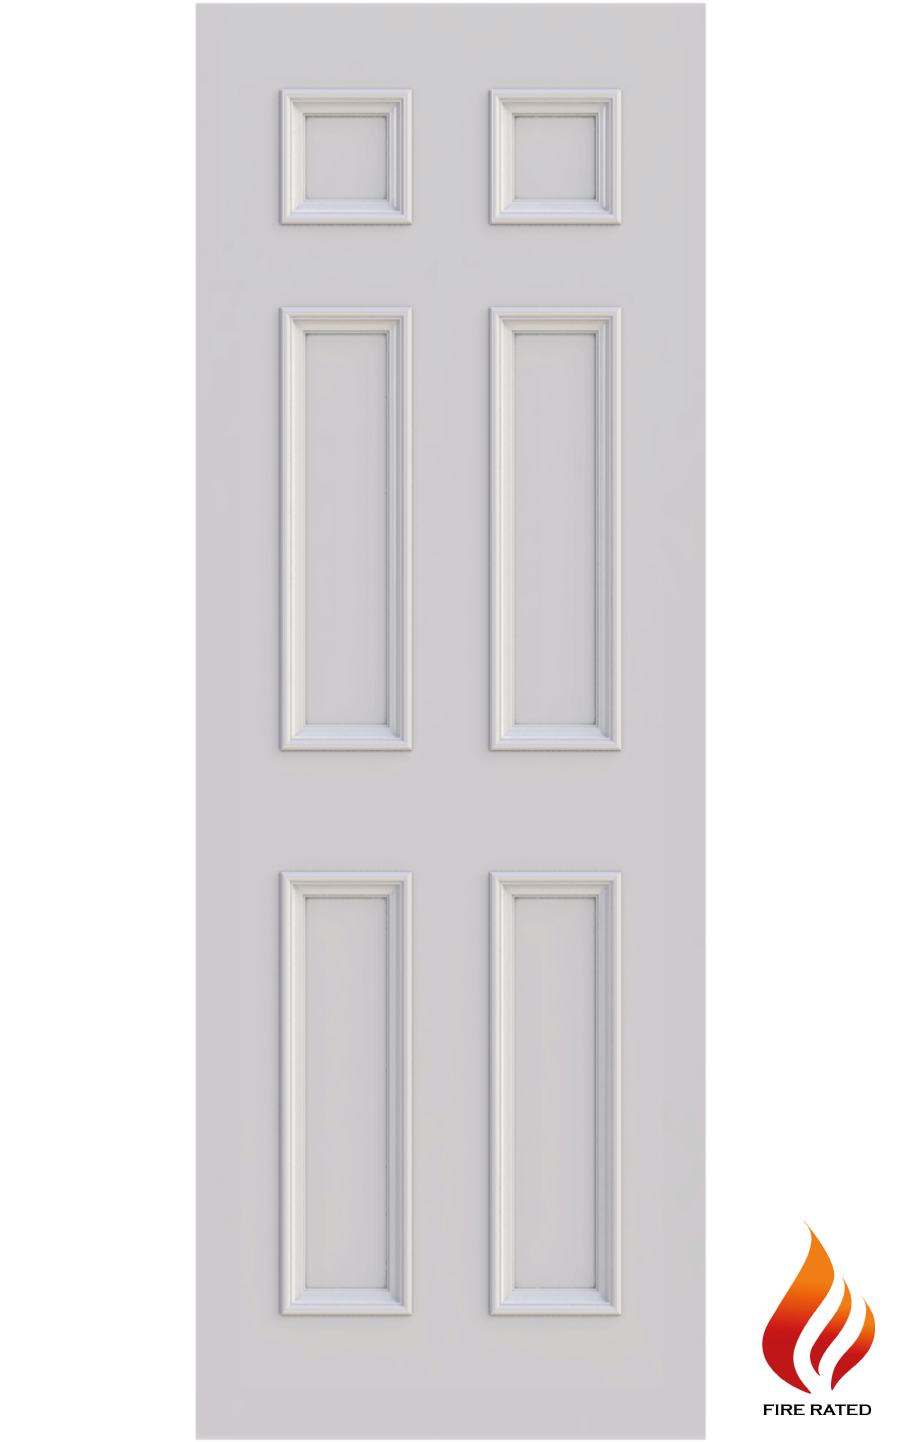 6 panel fire doors